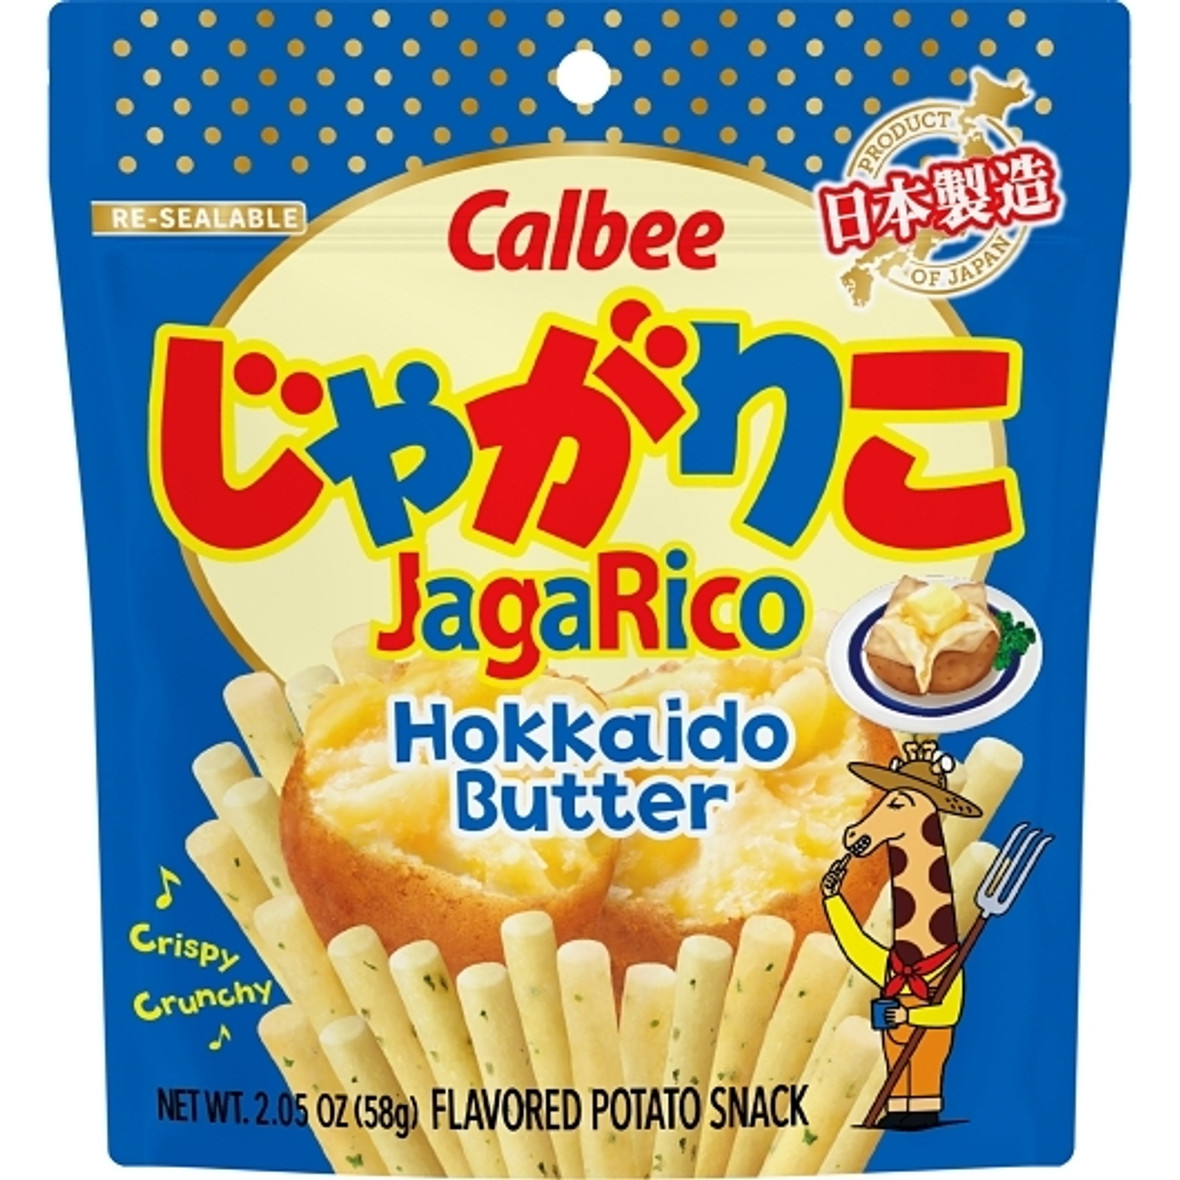 Calbee Jagarico Hokkaido Butter Case, 2.05 Ounce, 12 Per Case